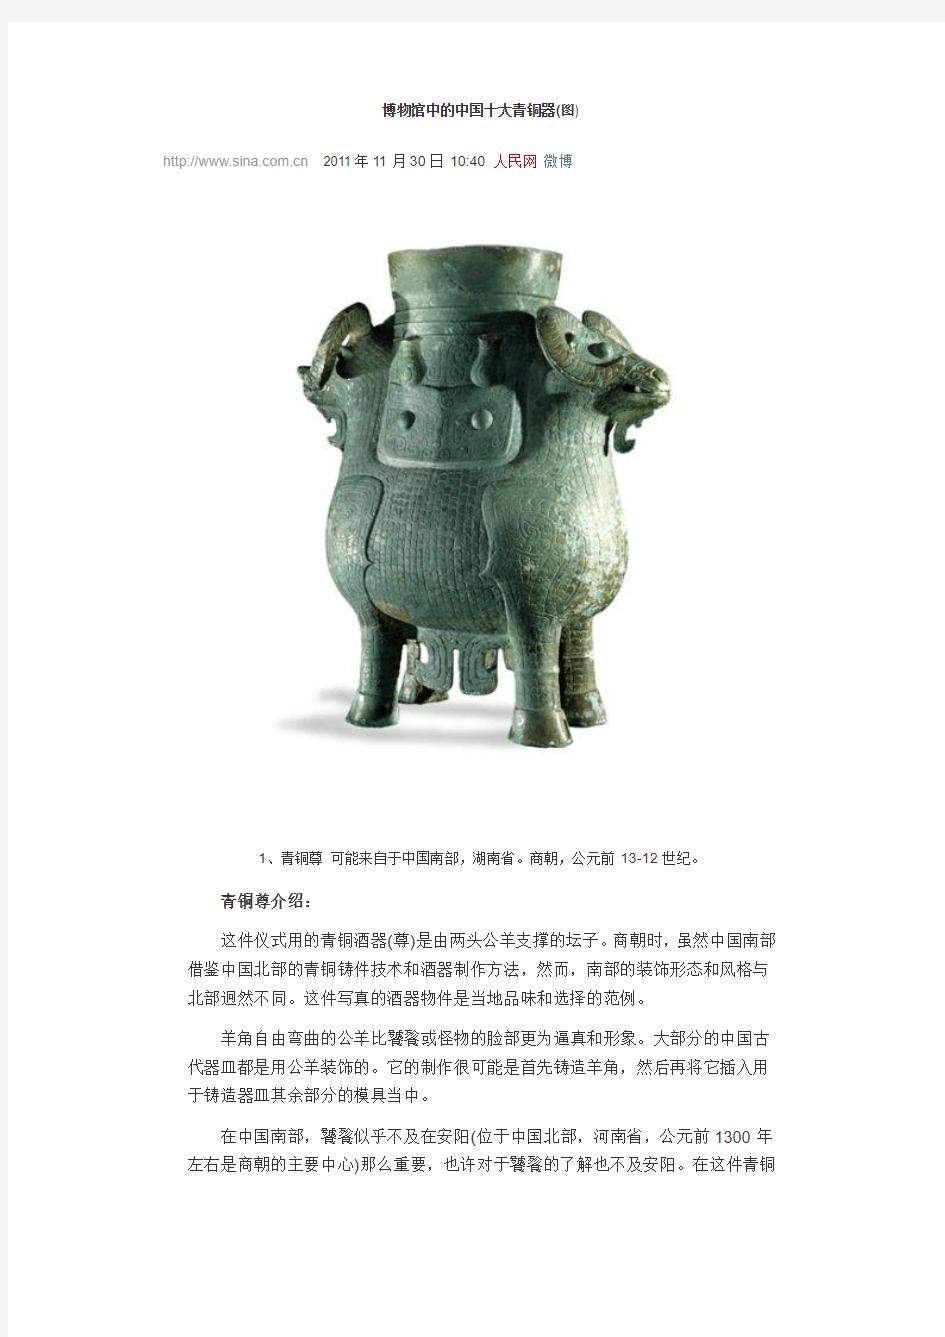 博物馆中的中国十大青铜器